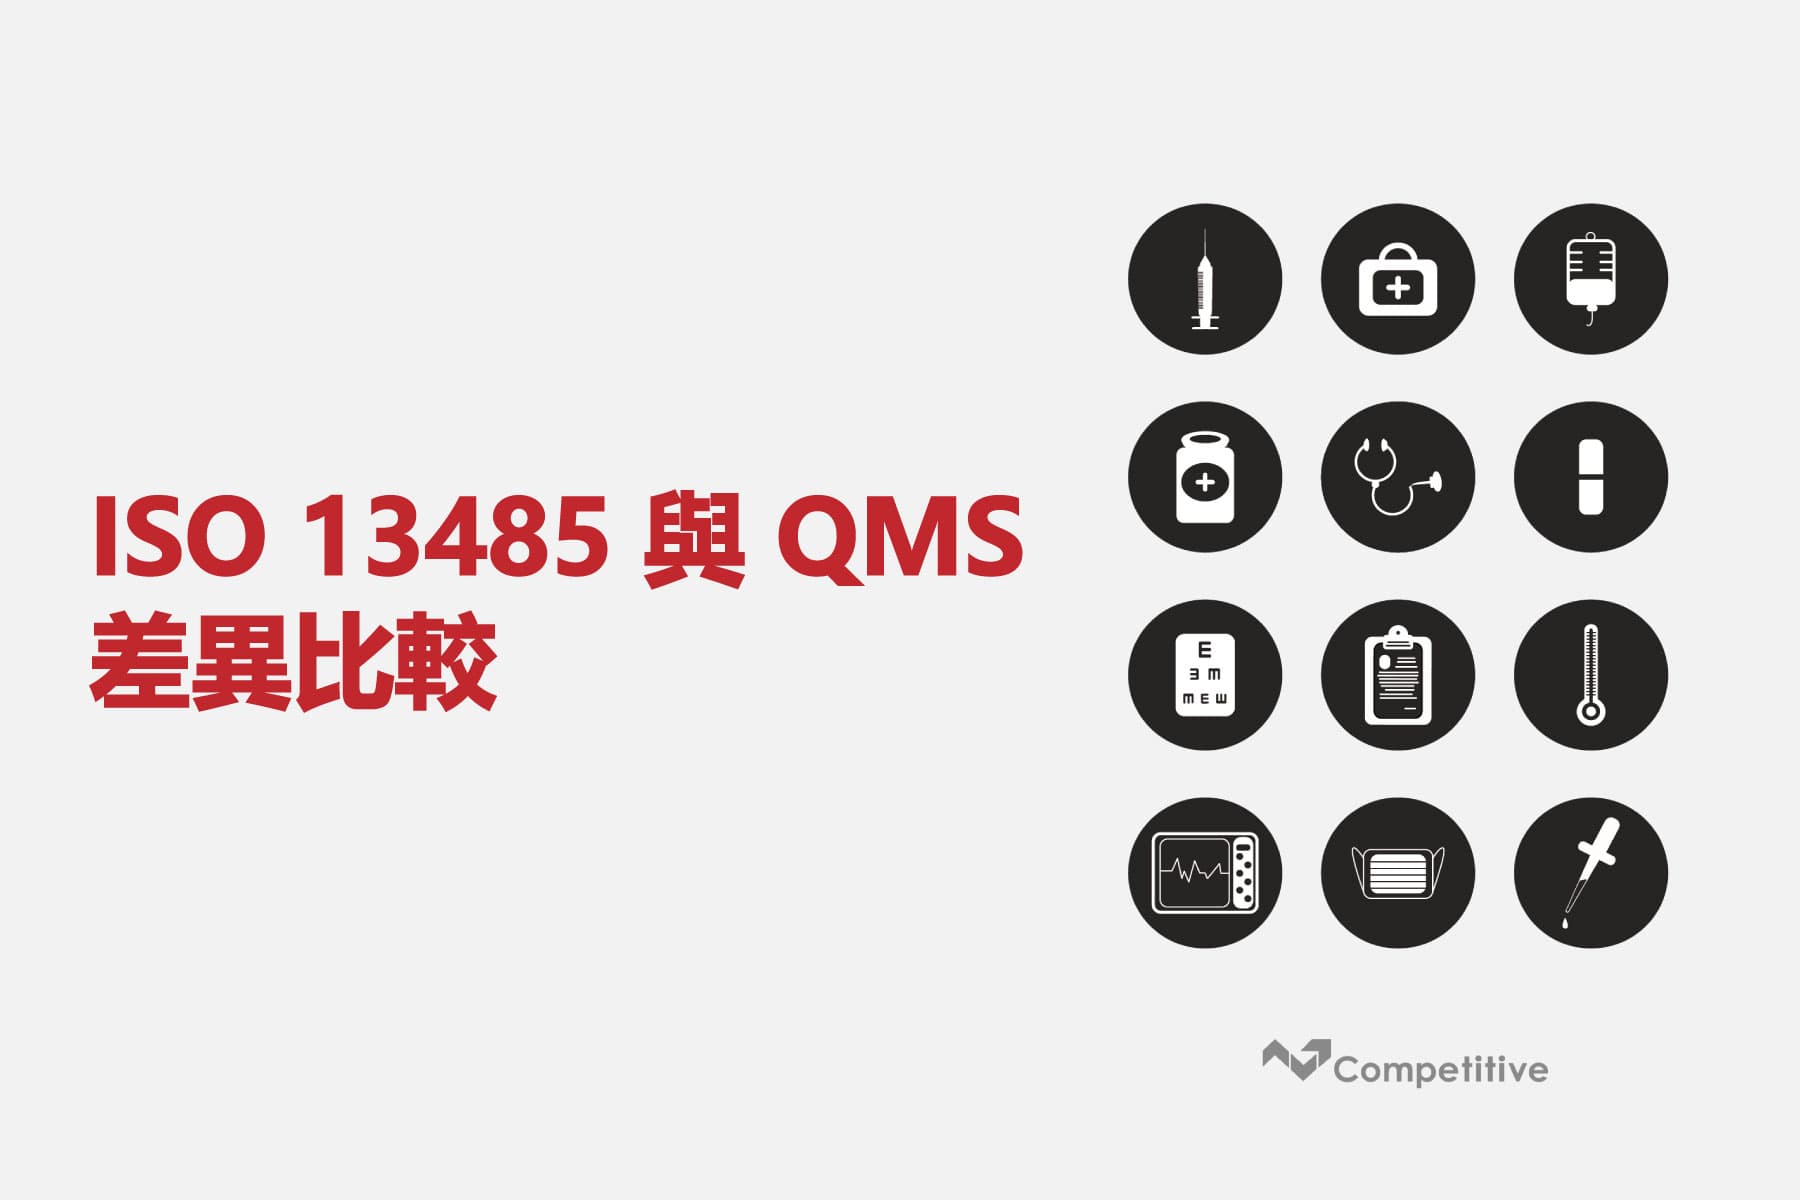 ISO 13485 與 QMS